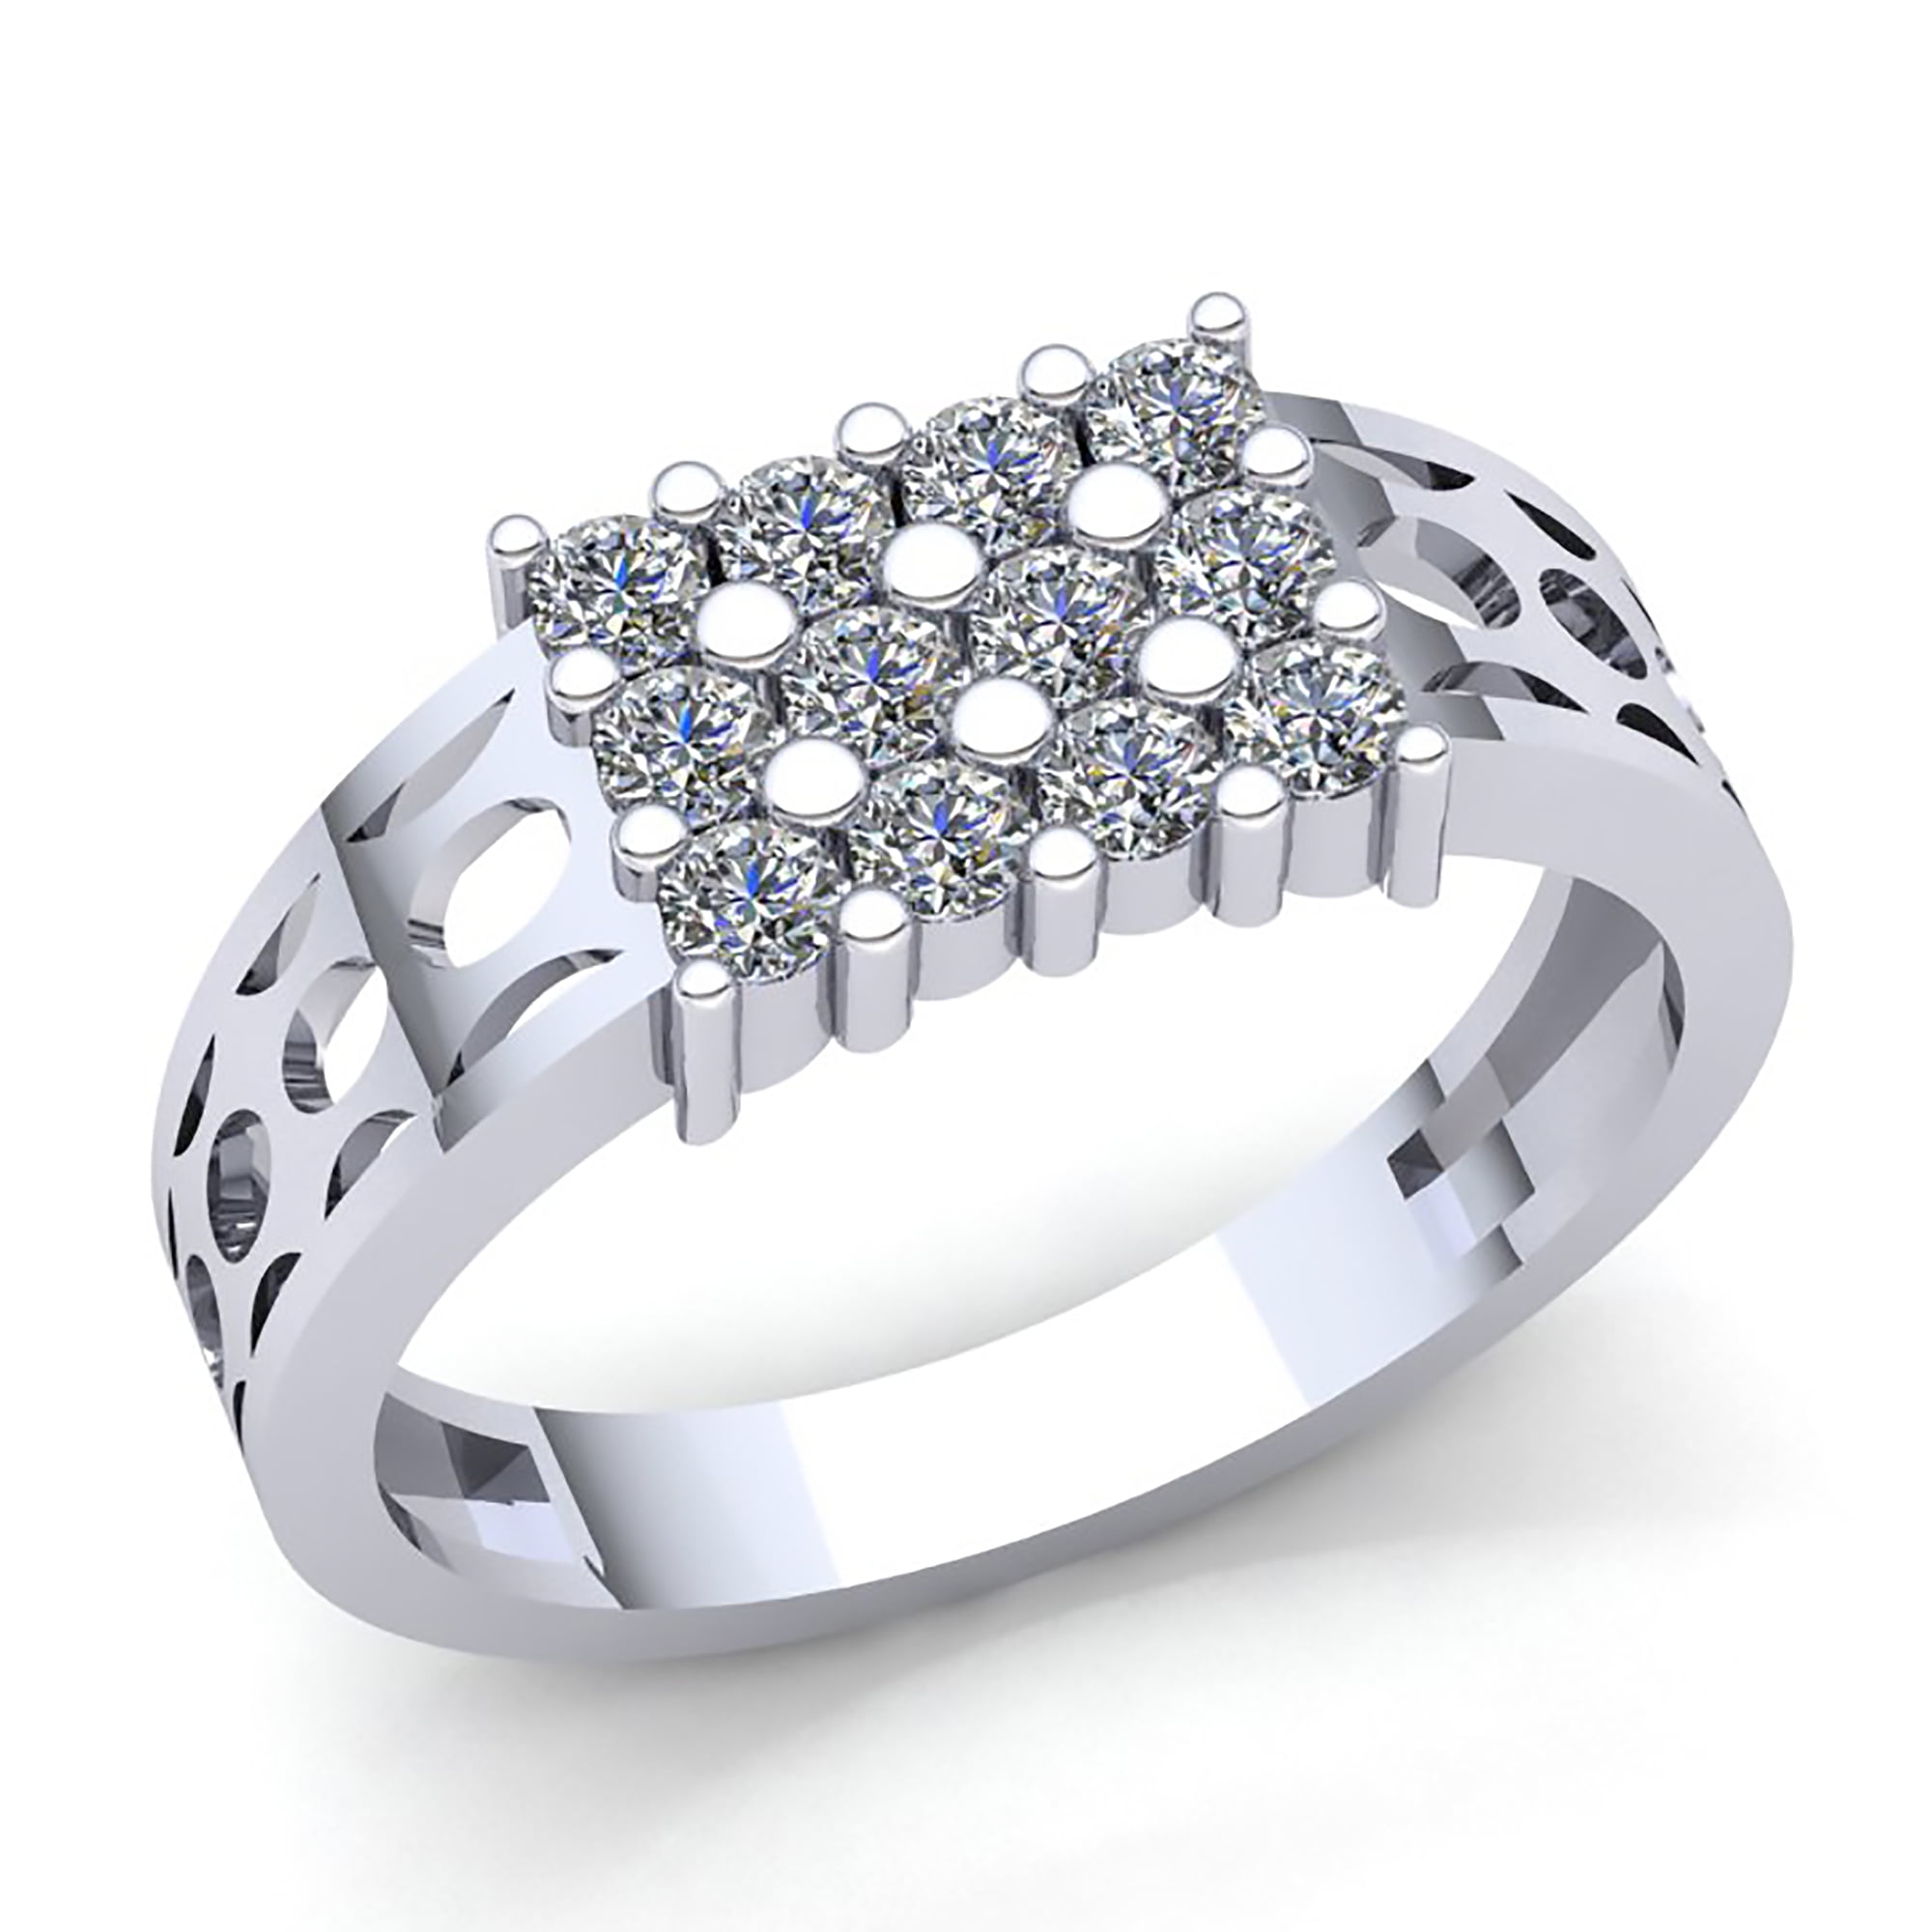 0.25 Ct Engagement Anniversary Ring 14K White Gold Round Cut  New Diamond Band 